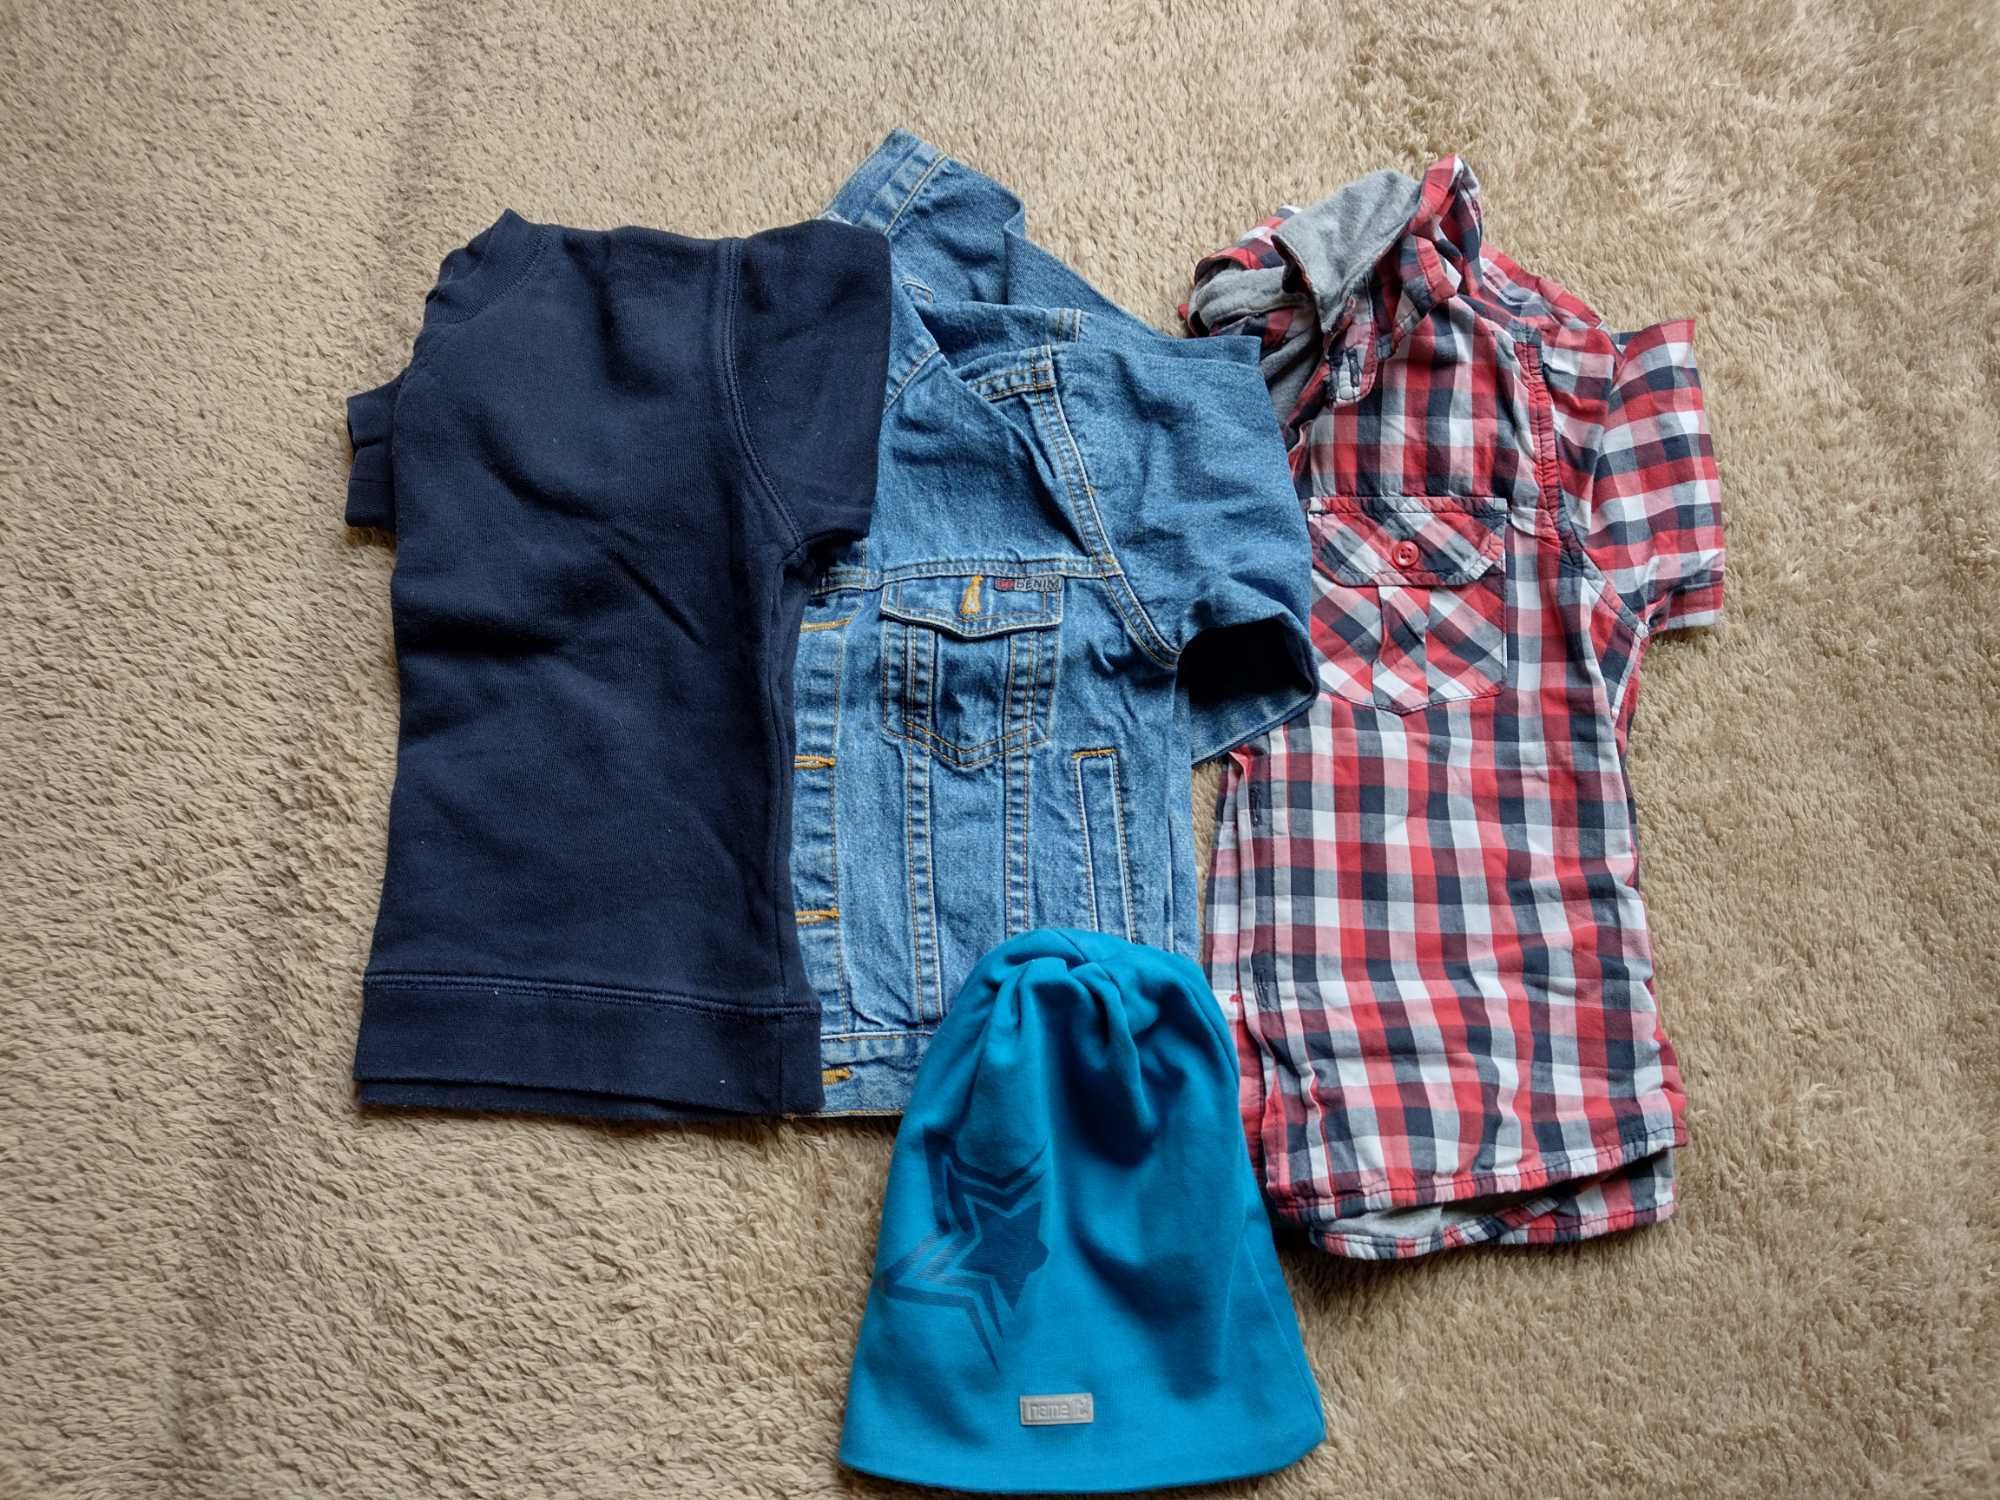 zestaw dla chłopca 4-5 lat ( bluza. kurteczka, koszula) czapka GRATIS